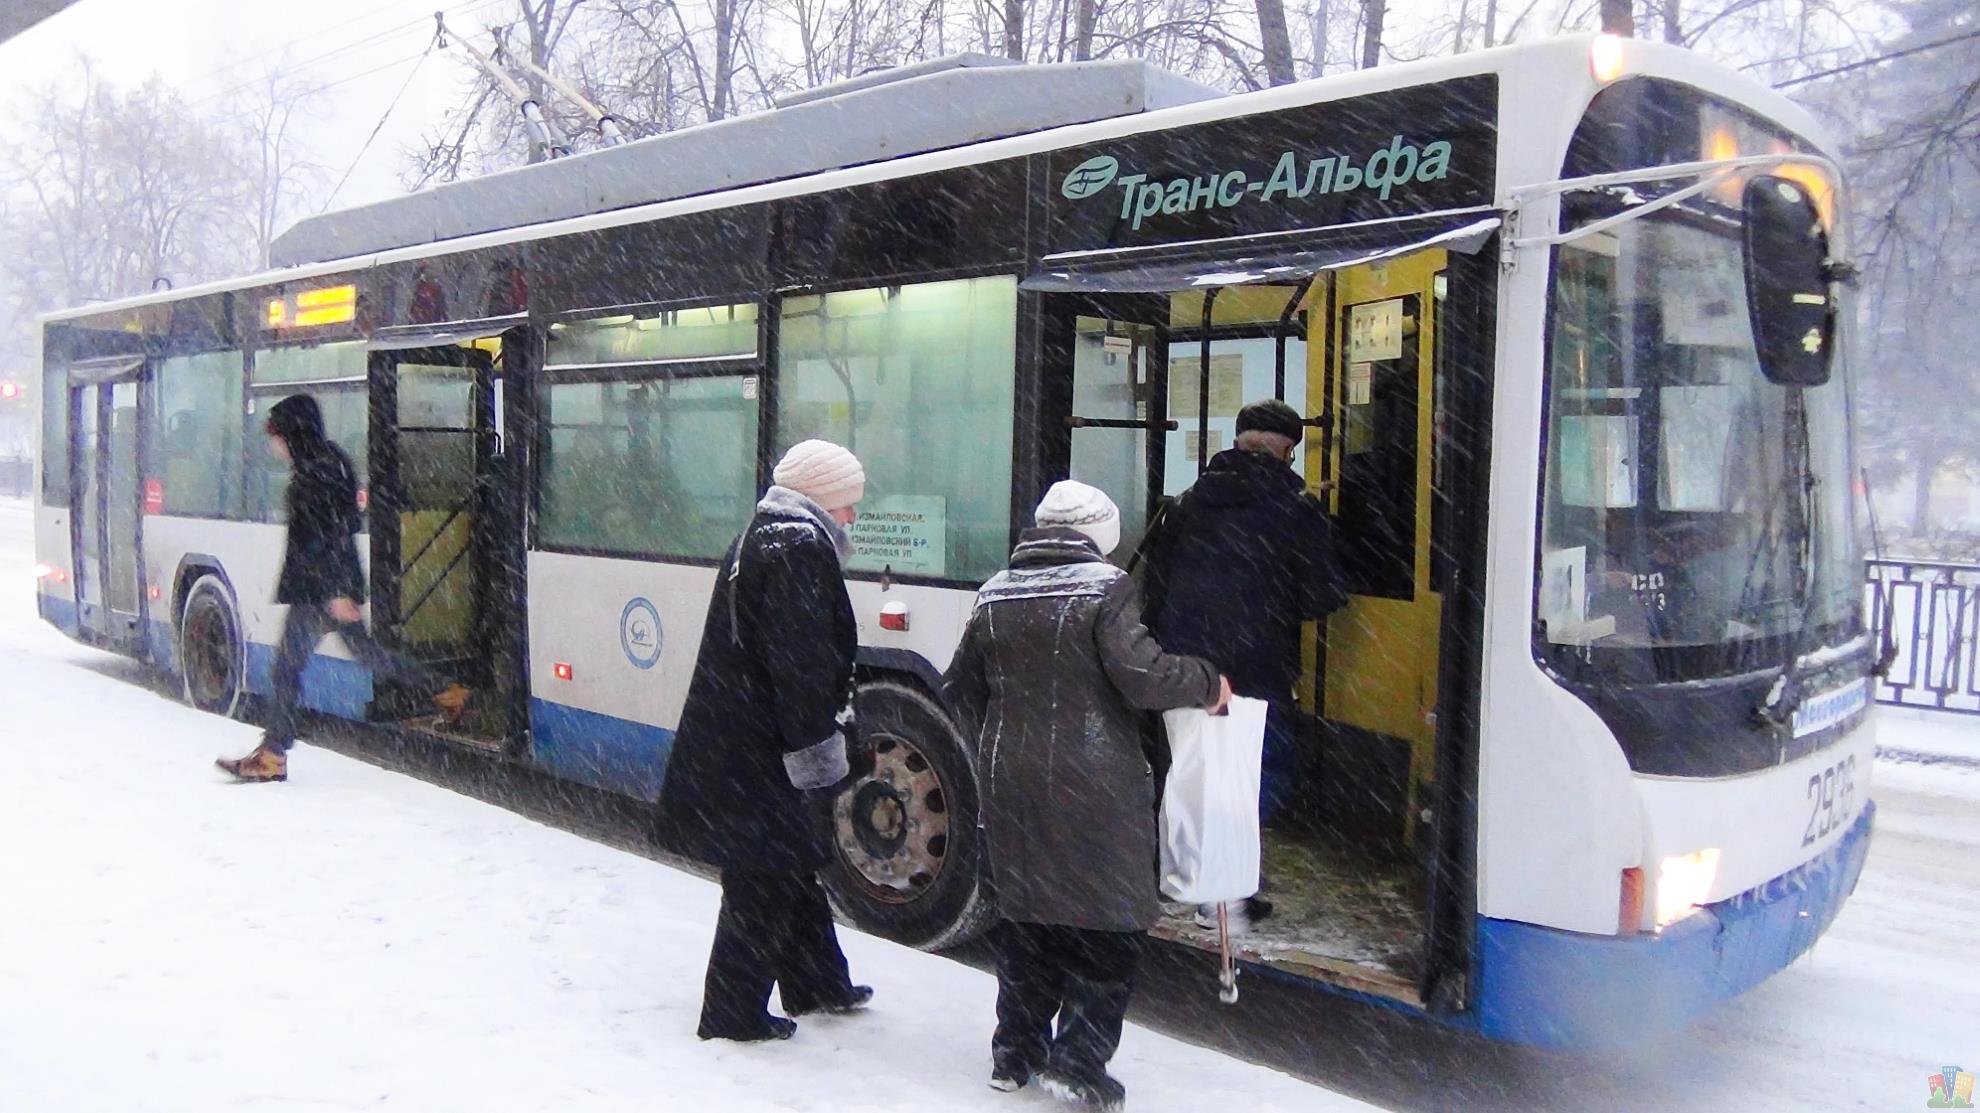 Упал в стоящем автобусе. Пассажиры на остановке. Остановка общественного транспорта. Люди на остановке. Остановка автобуса зимой.